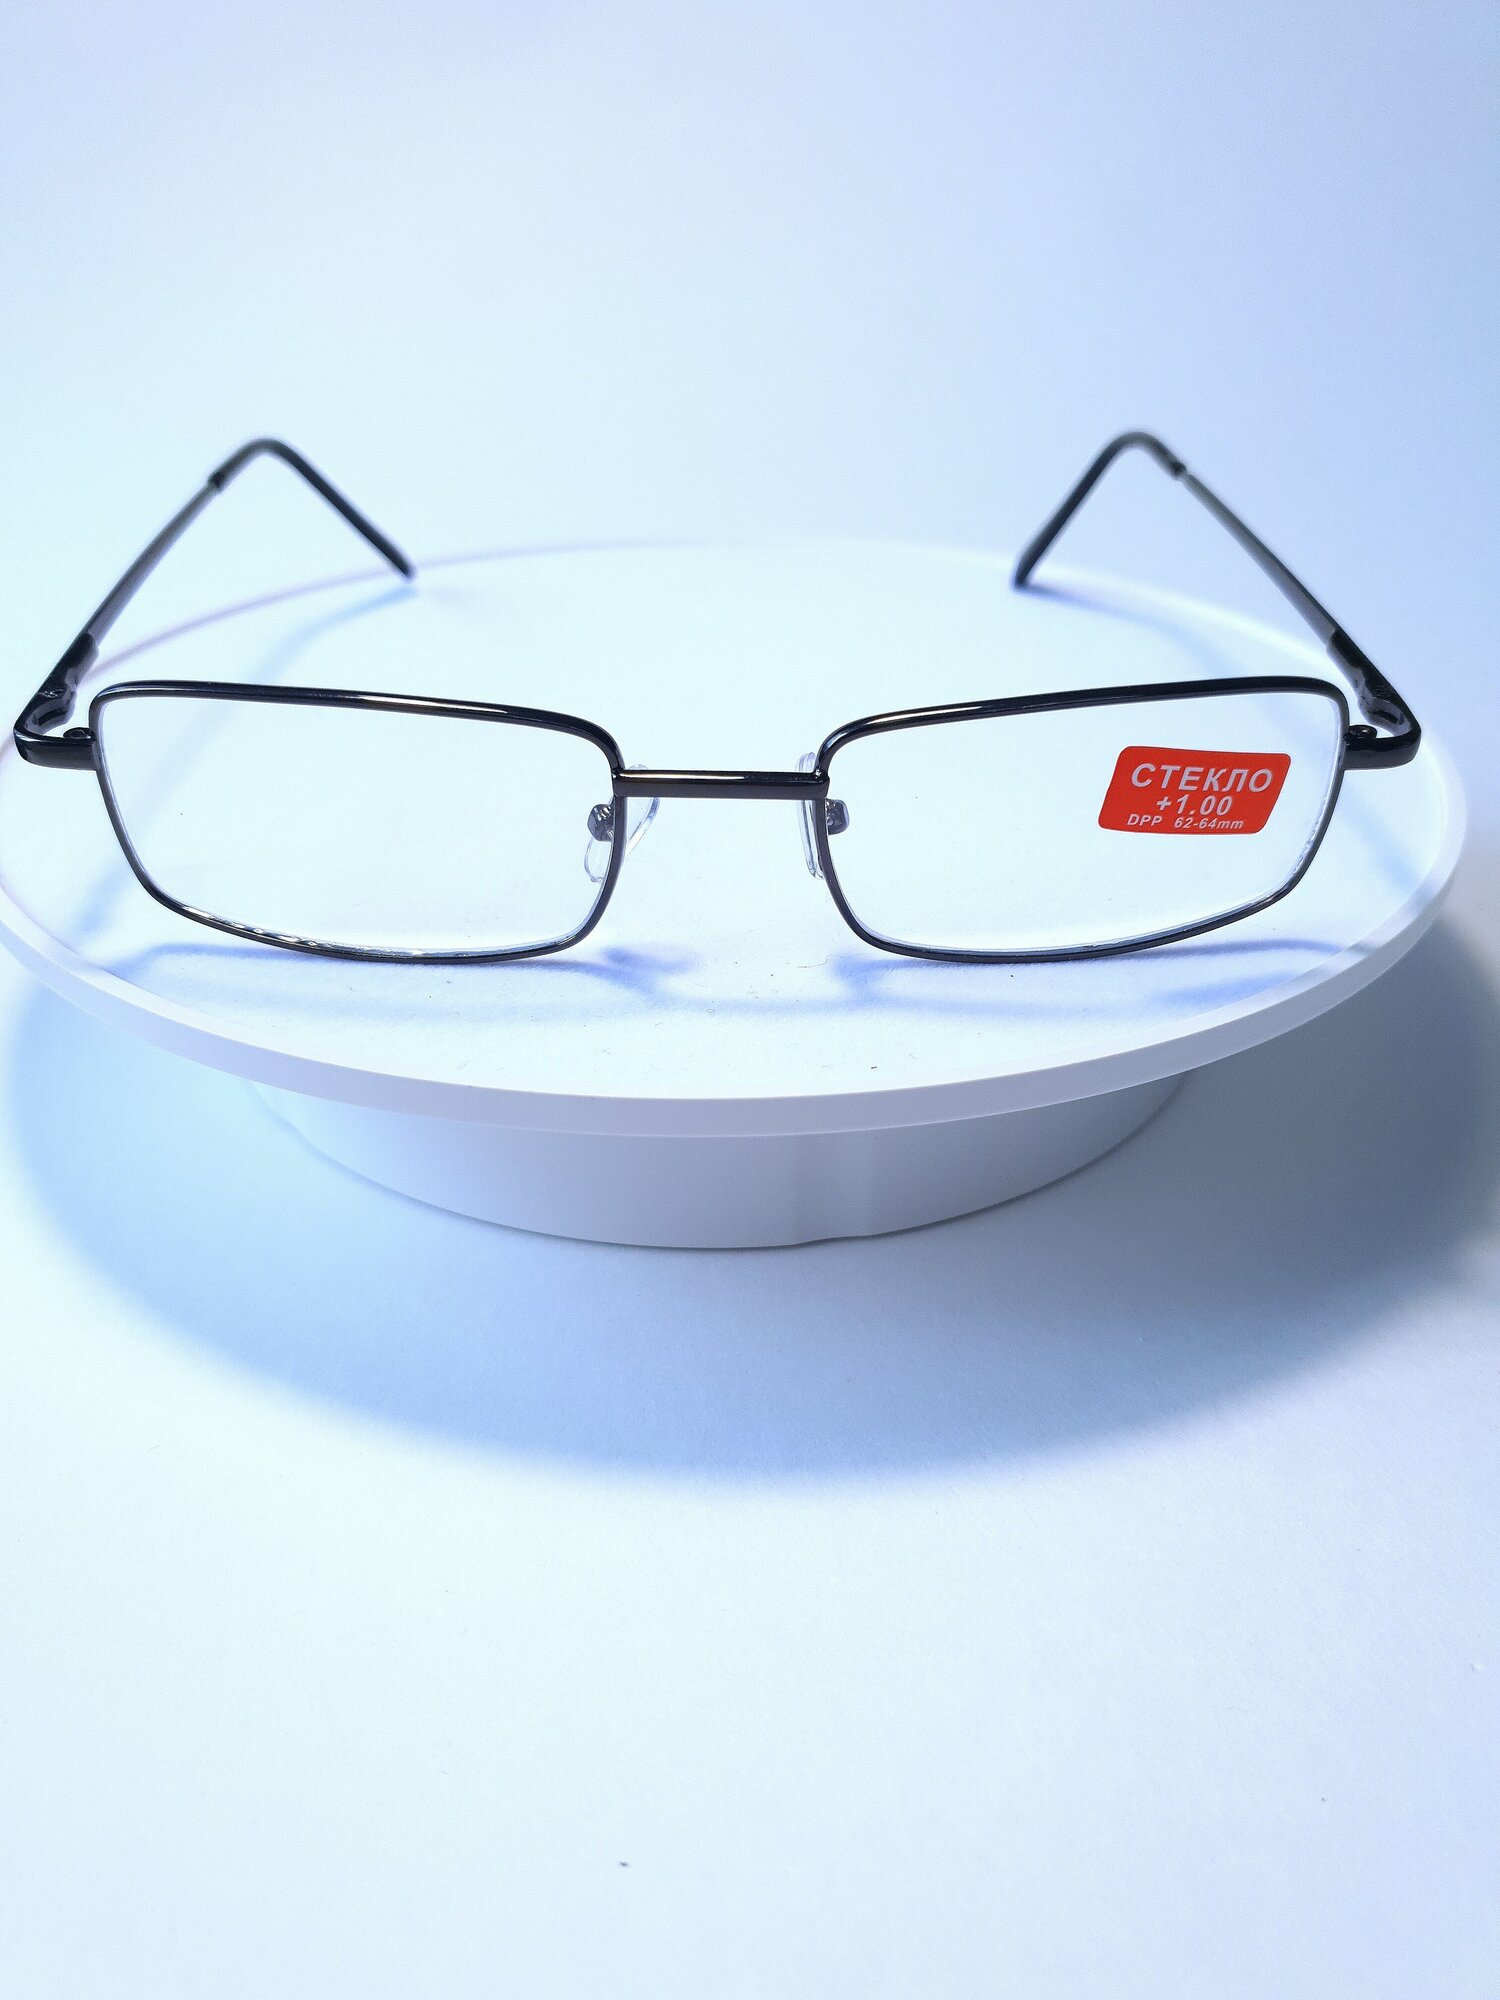 Готовые очки для чтения стекло +150/ очки для зрения/ очки корригирующие/очки с диоптриями/оптика/очки для зрения мужские/женские